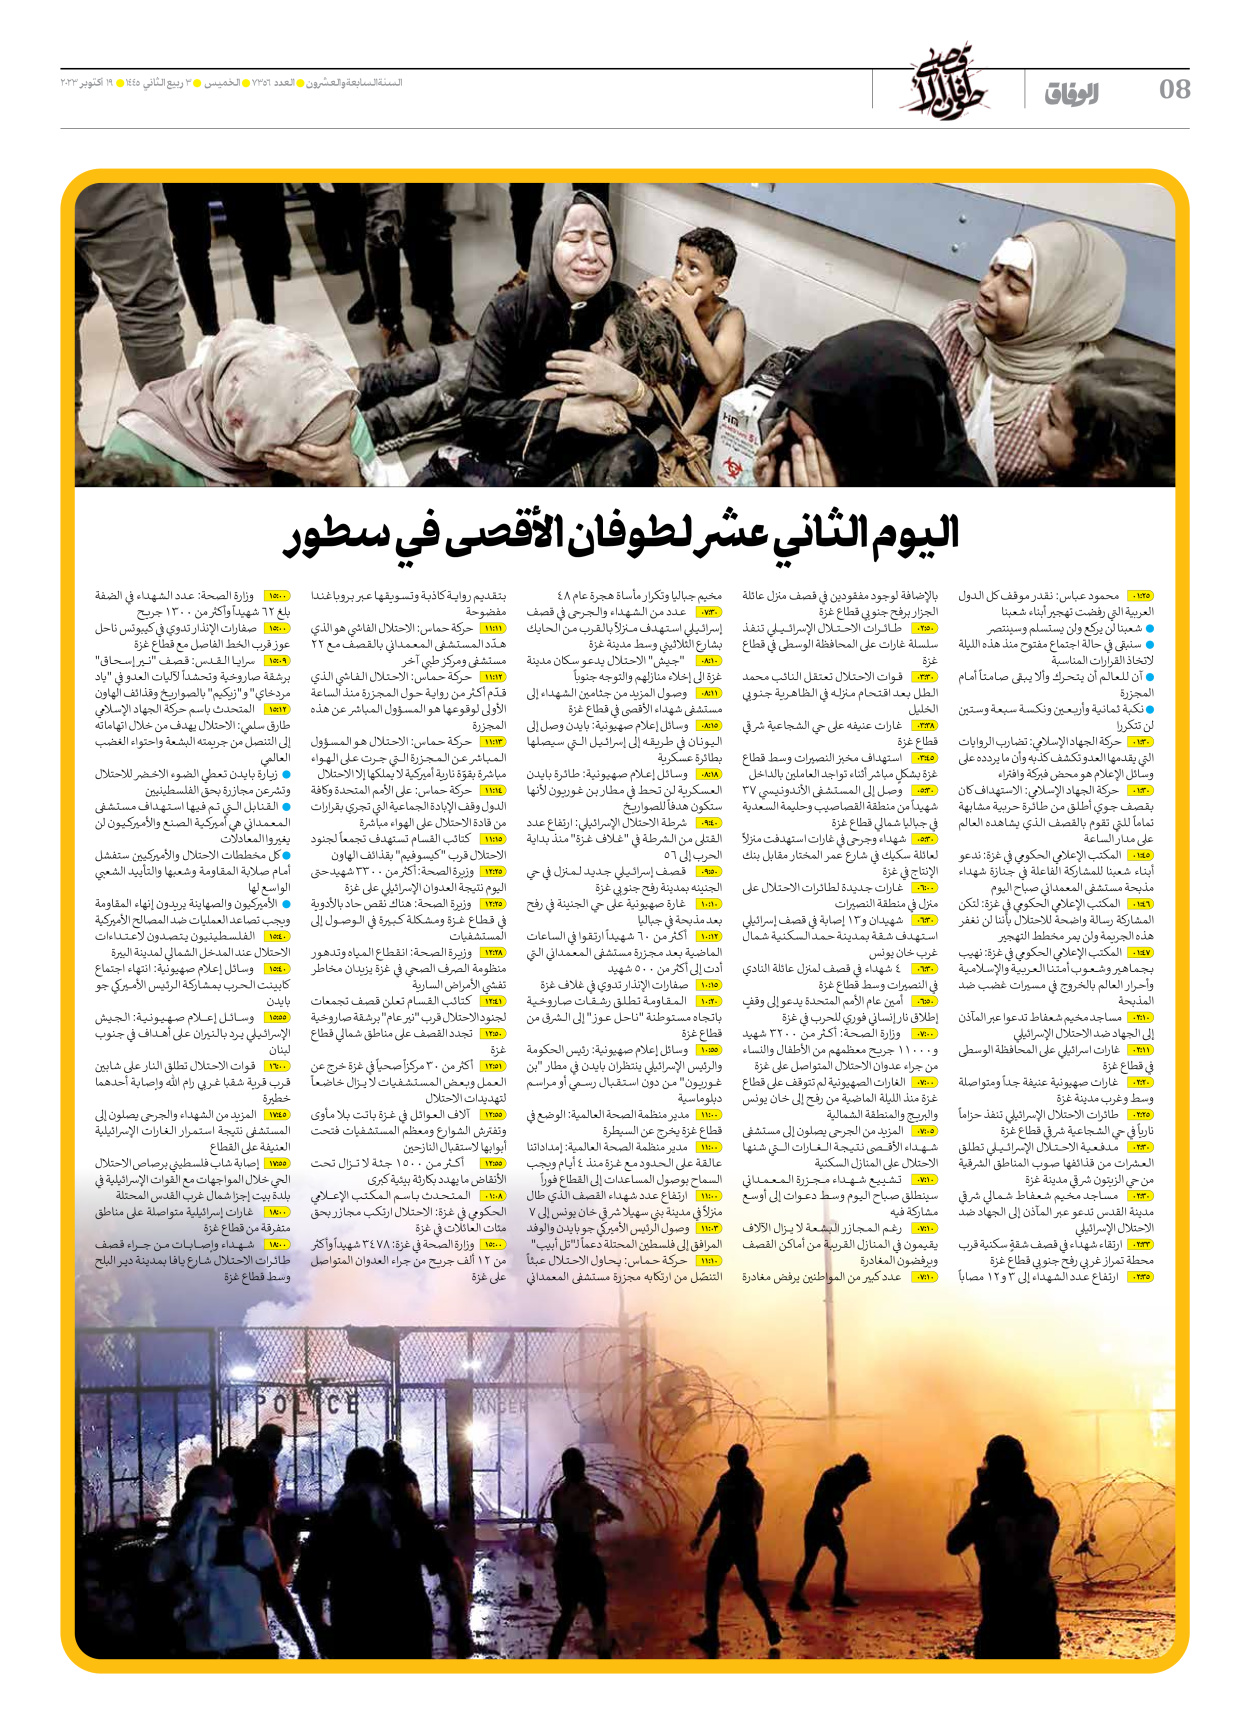 صحیفة ایران الدولیة الوفاق - العدد سبعة آلاف وثلاثمائة وستة وخمسون - ١٩ أكتوبر ٢٠٢٣ - الصفحة ۸